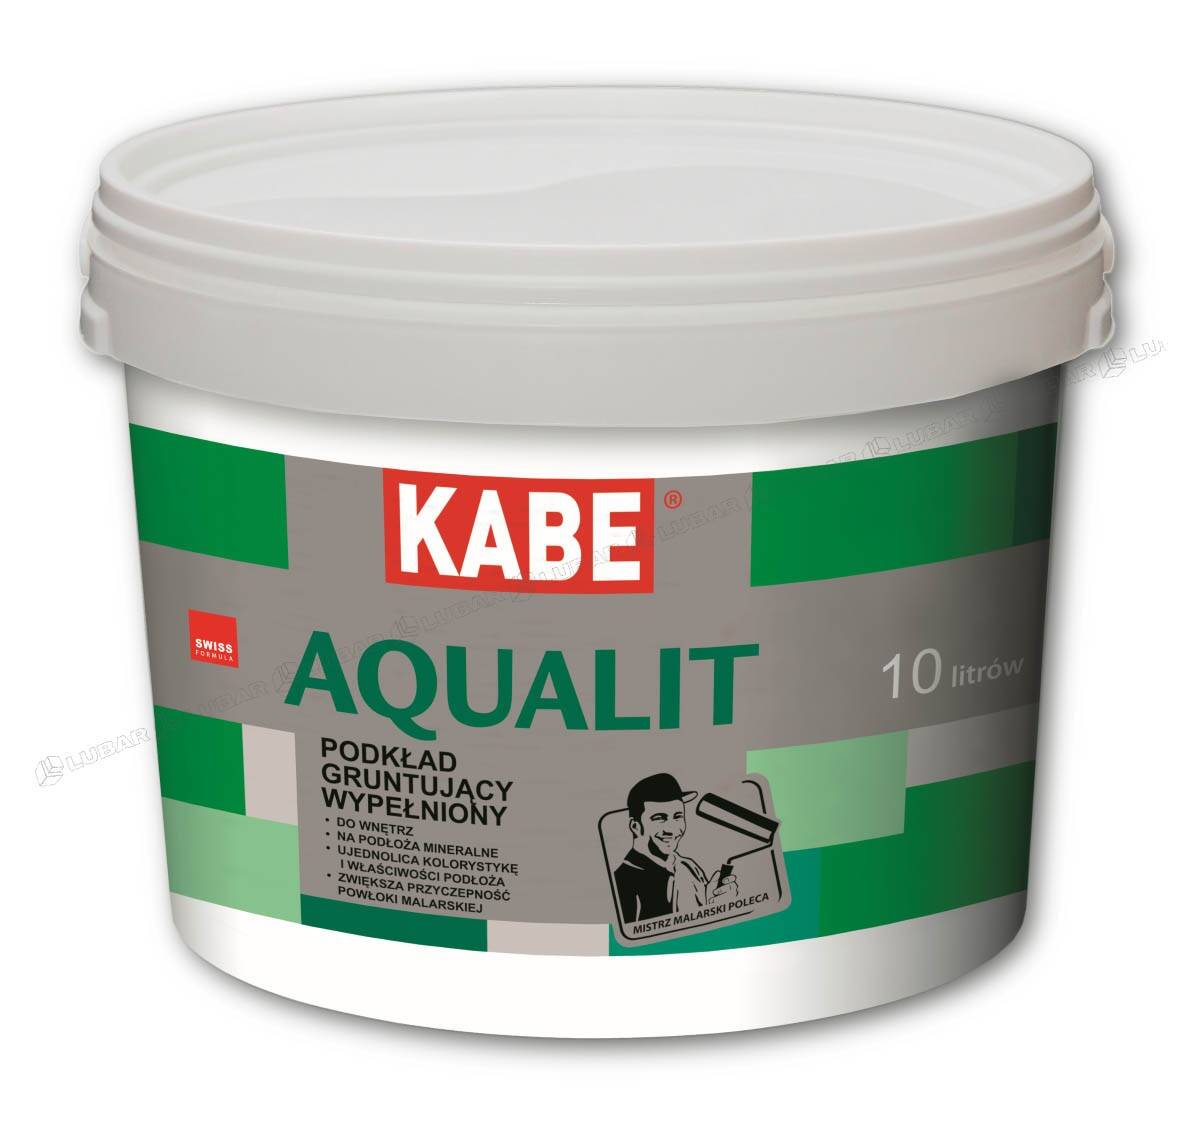 Podkład gruntujący pod farby Kabe Aqualit 5 l KABE